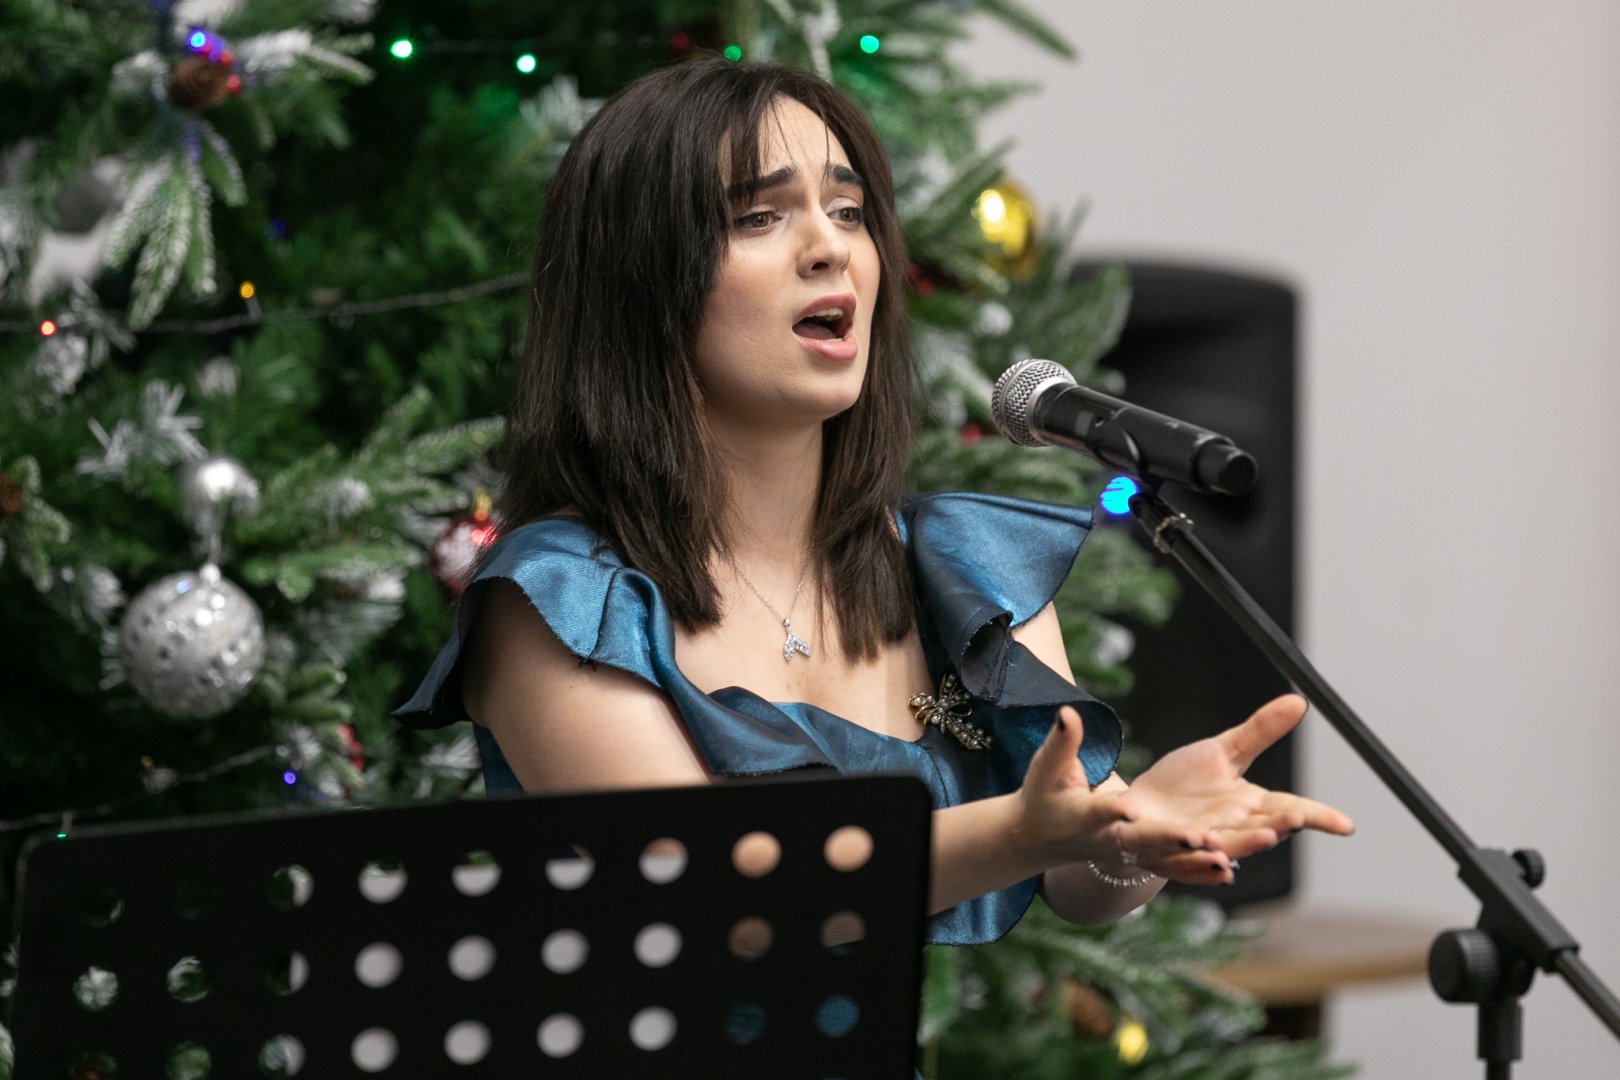 Старый Новый год в Баку отметили концертом эстрадной музыки (ФОТО)